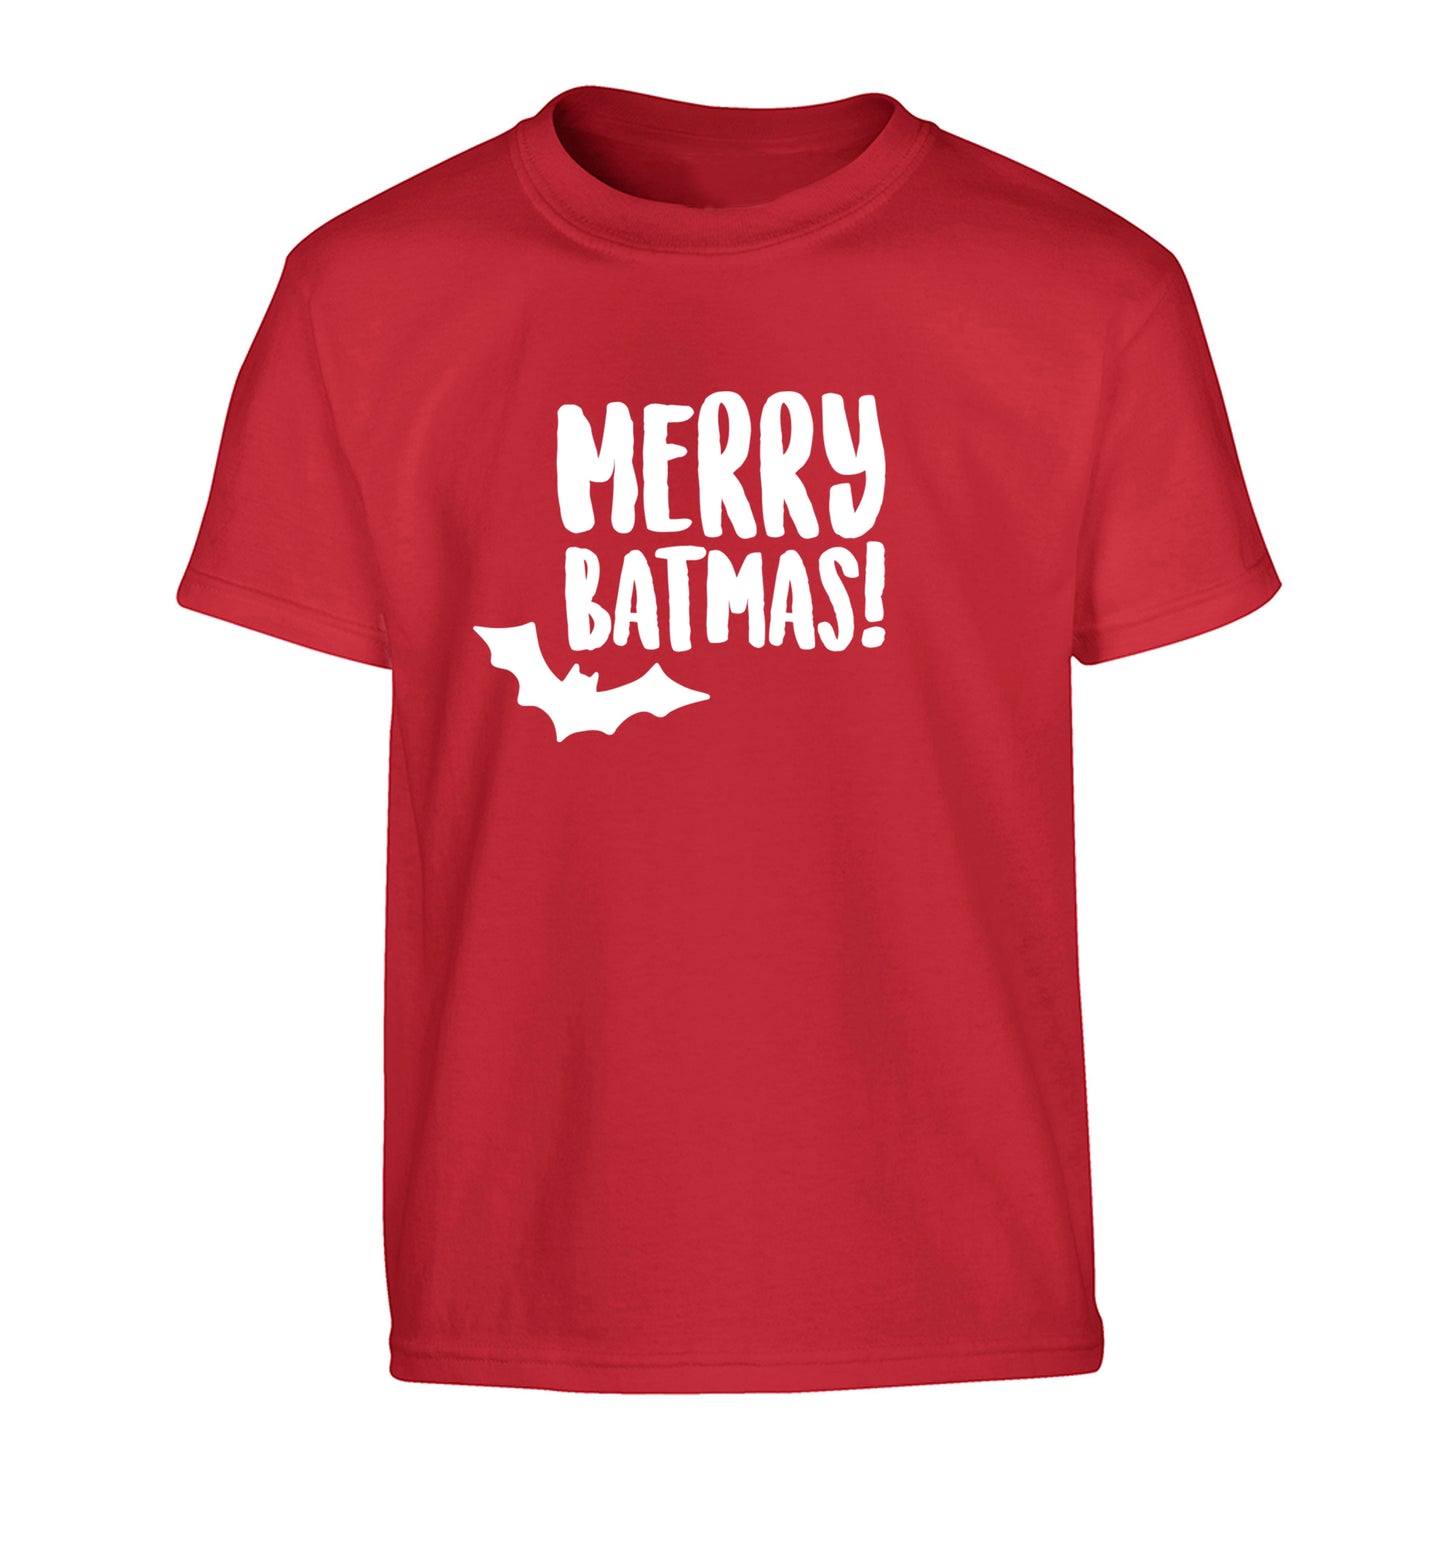 Merry Batmas Children's red Tshirt 12-14 Years